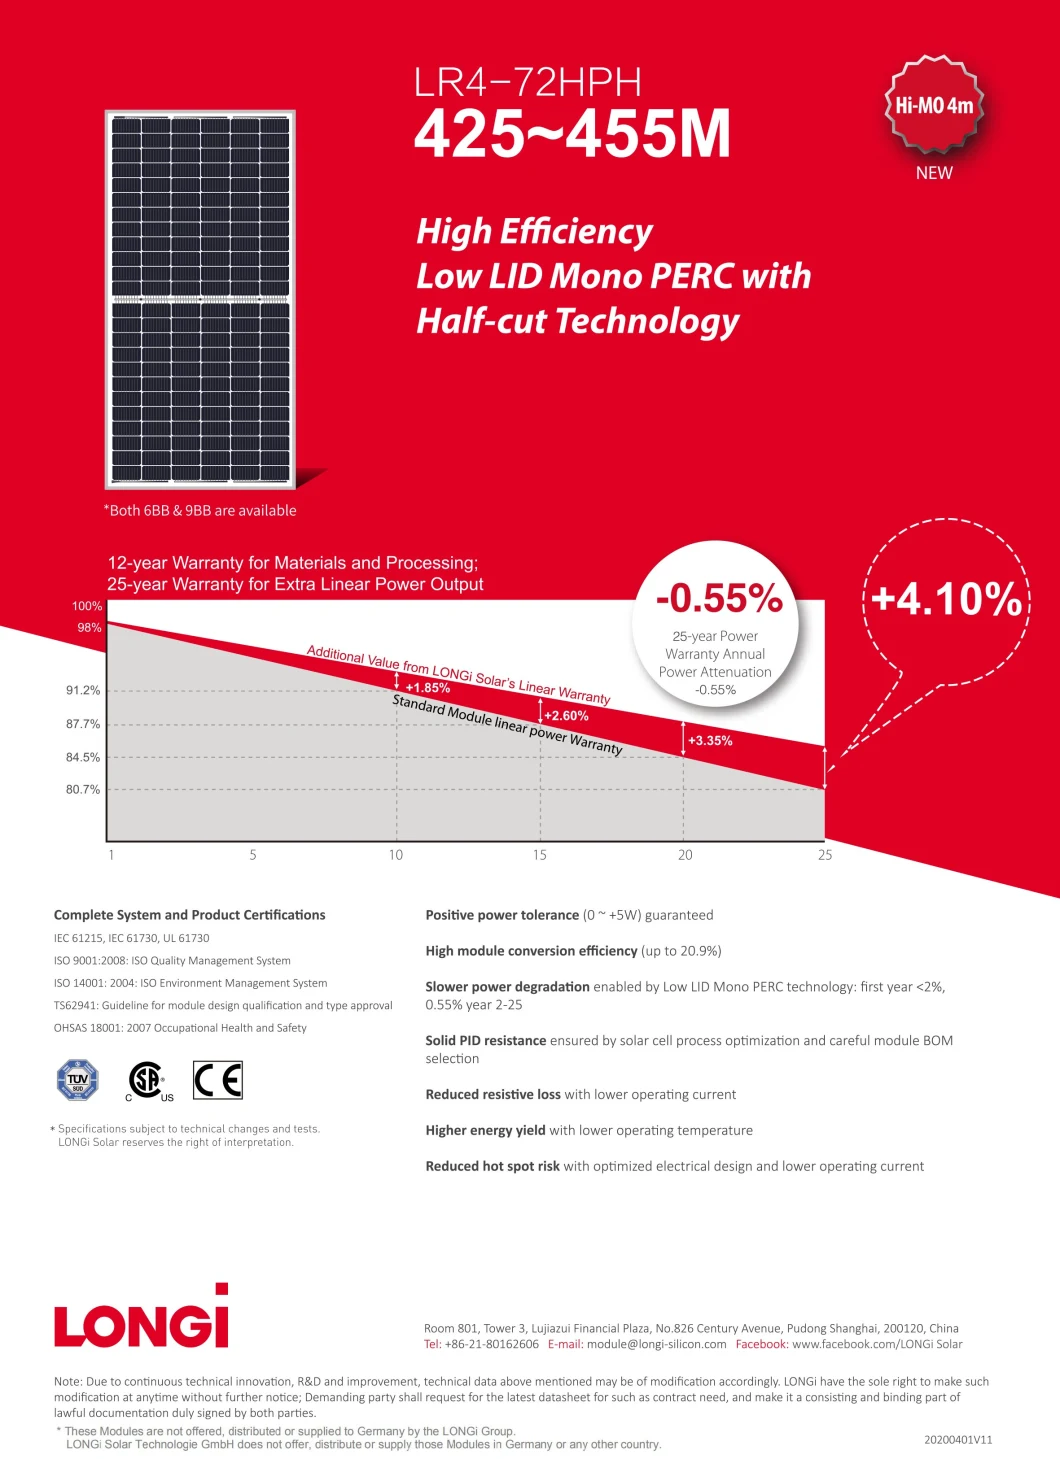 Longi PV Solar Panels Prices 430W 435W 440W 445W 450W Solar Power Panel